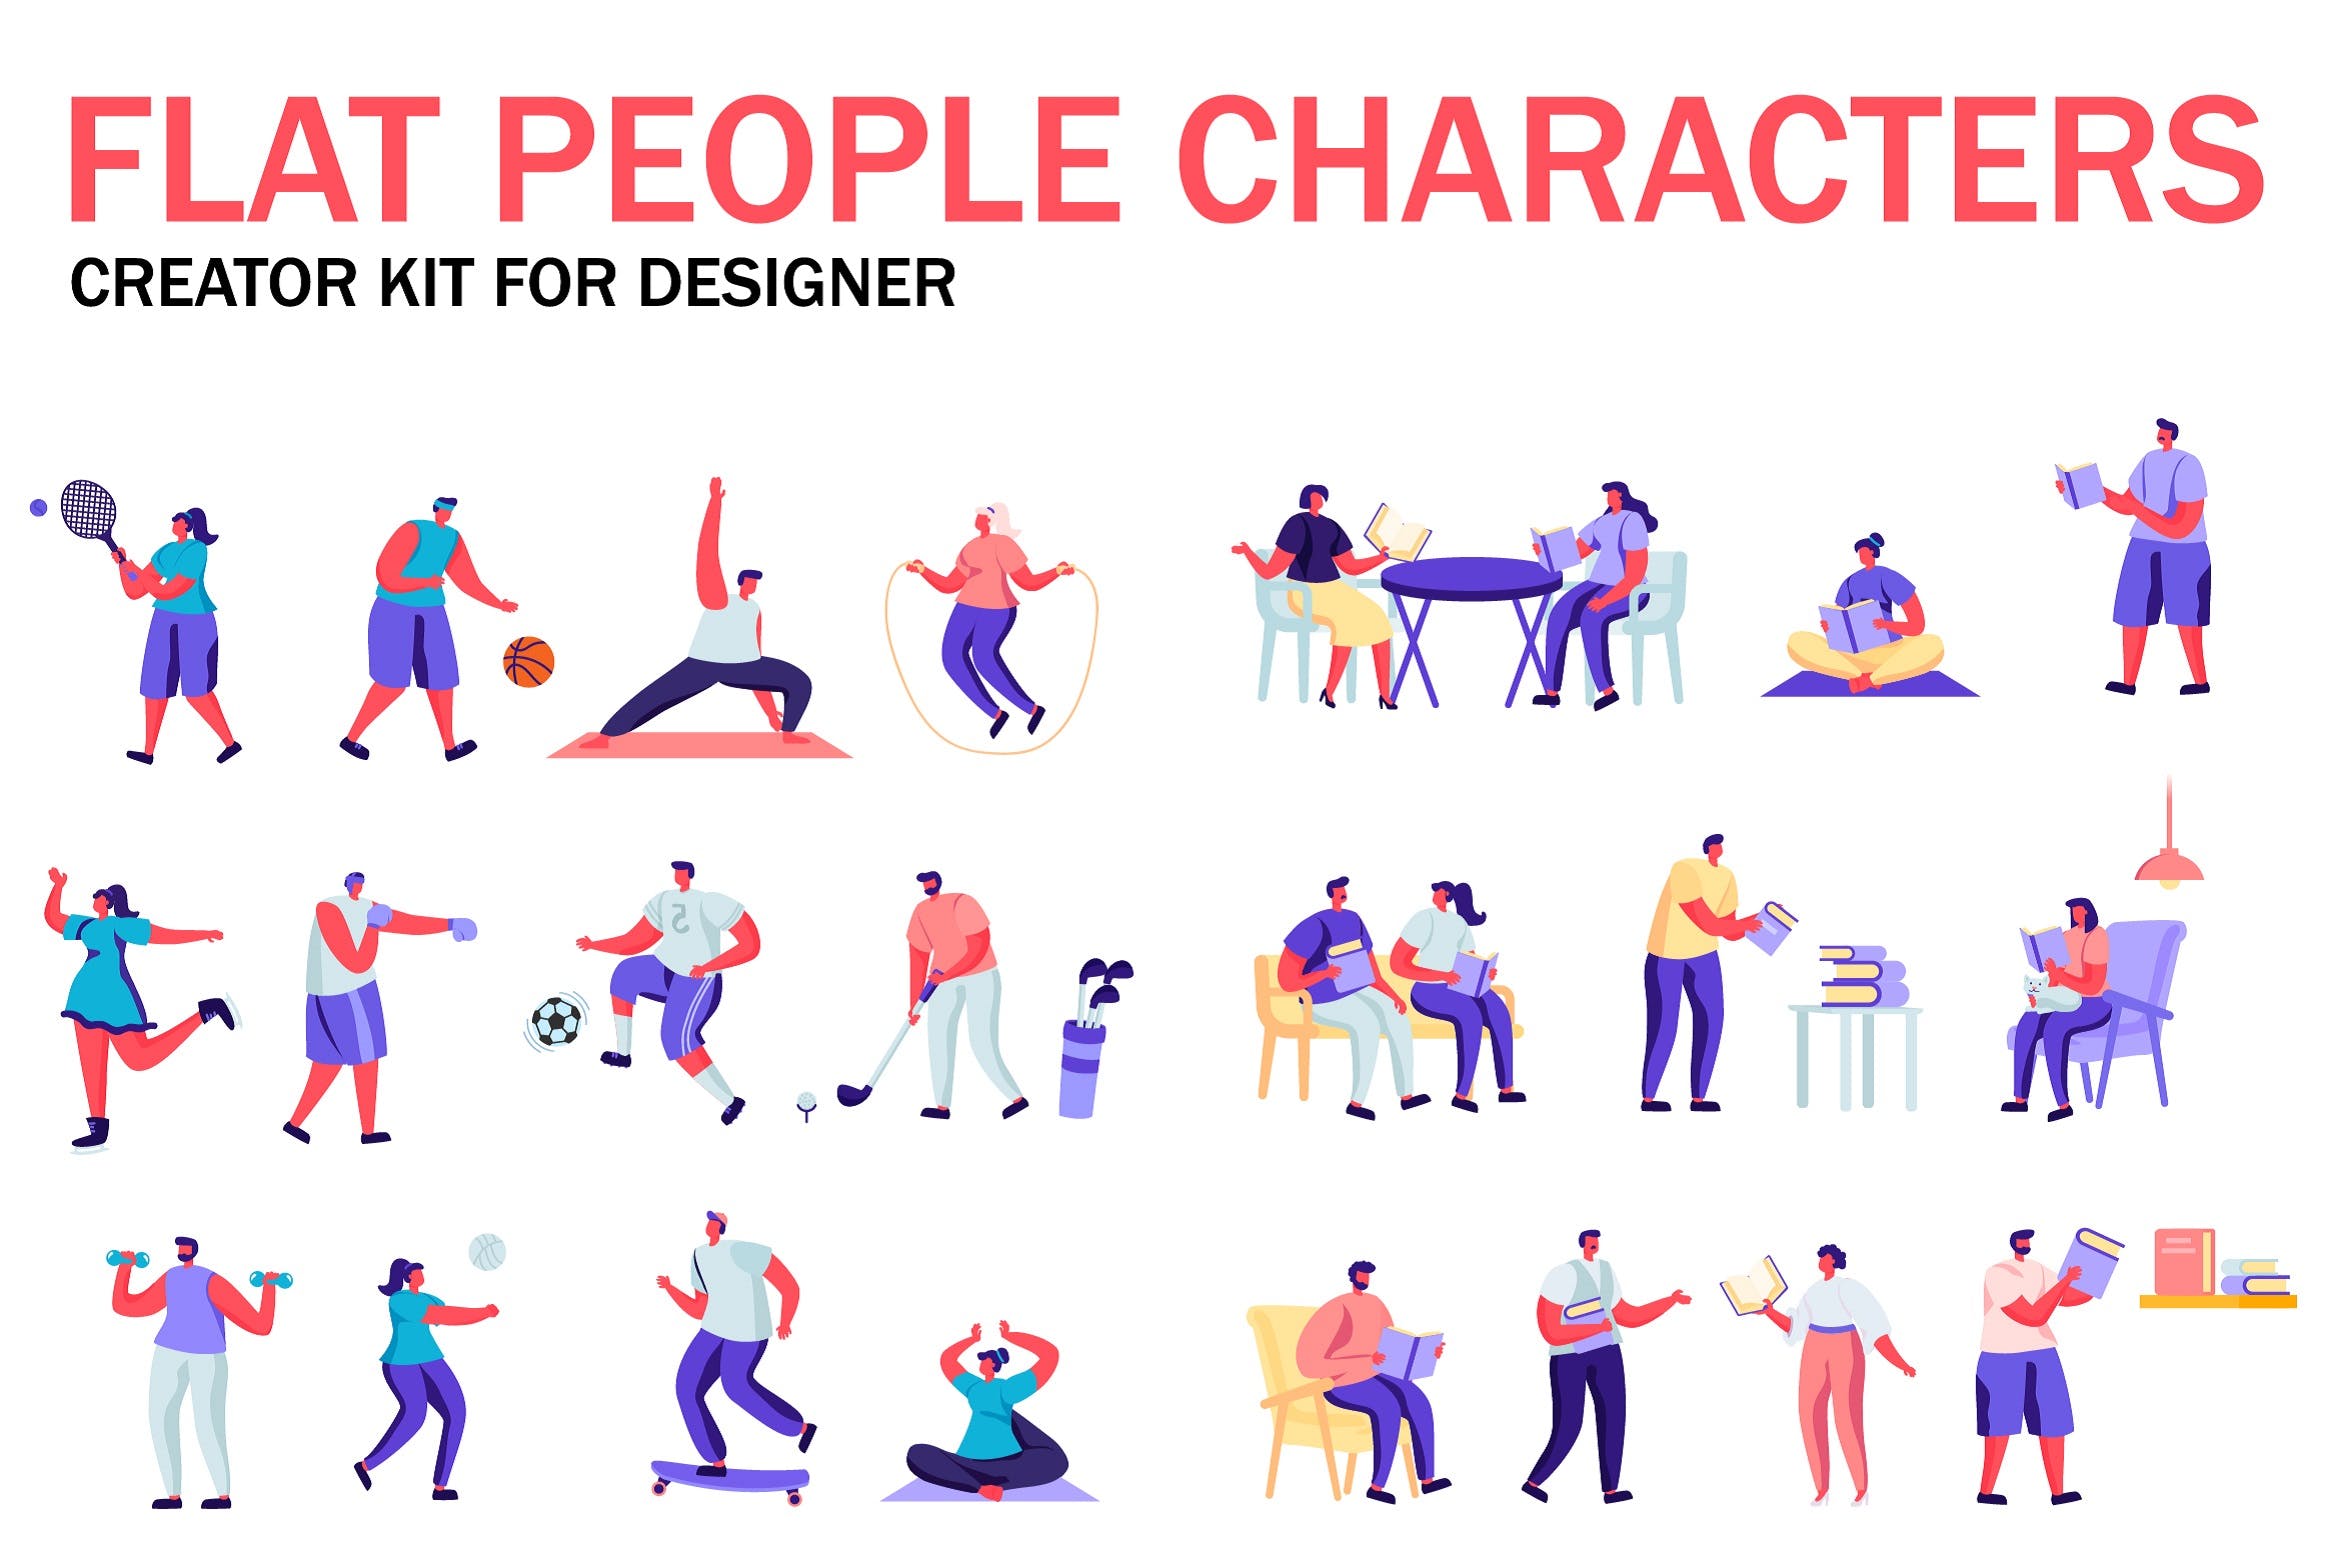 扁平化设计风格虚拟人物角色图形设计工具包v9 Flat People Character Creator Kit插图